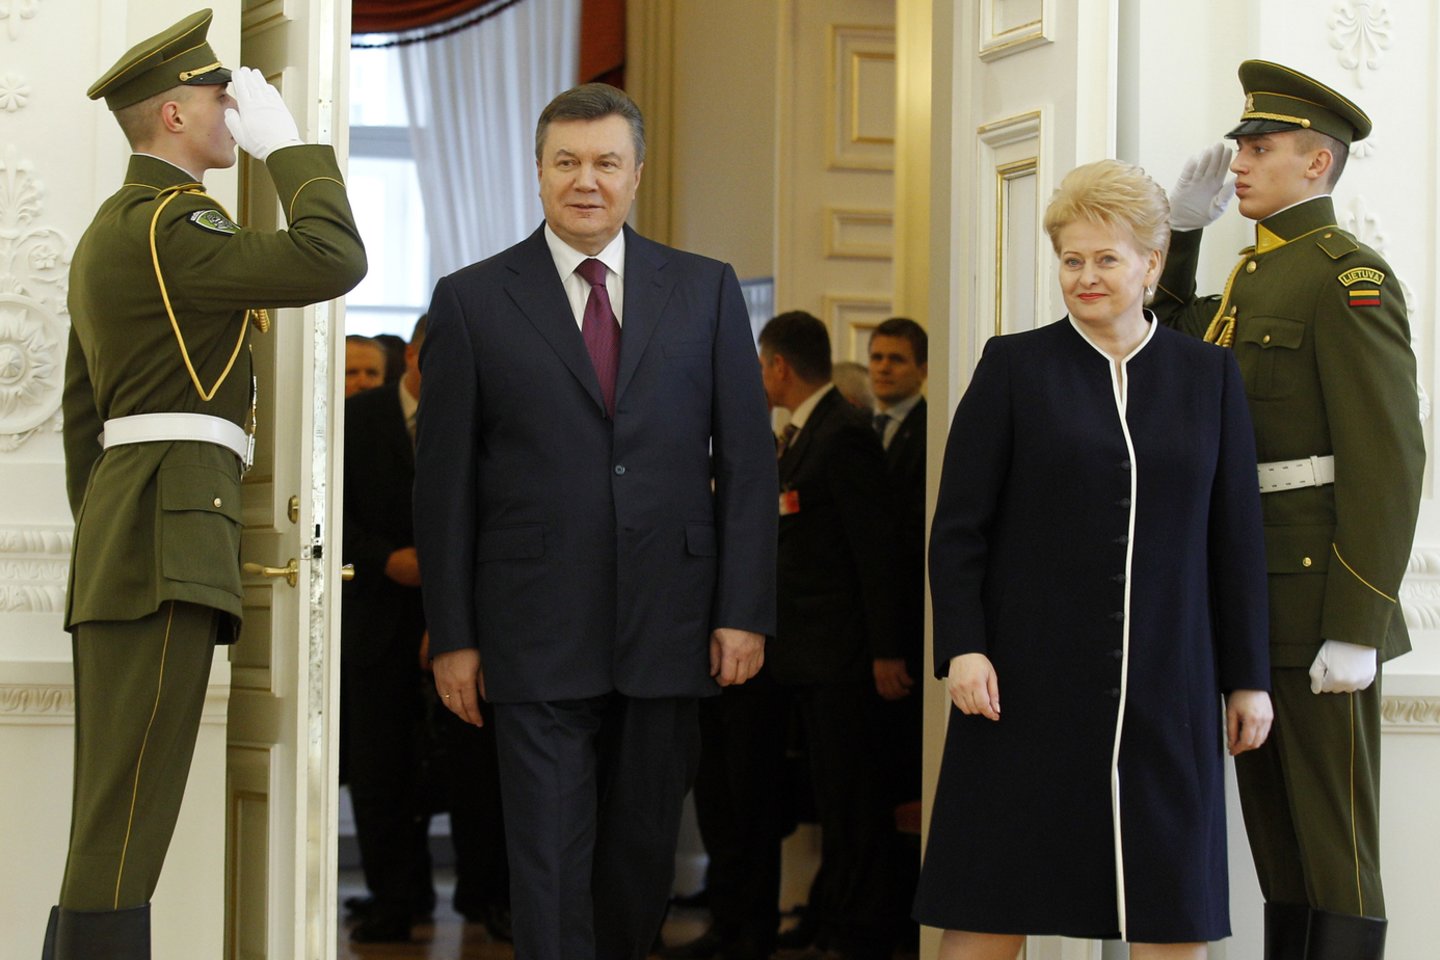 2013 m. Ukrainos prezidentas V.Janukovyčius per Europos Sąjungos Vadovų Tarybos susitikimą Vilniuje atsisakė pasirašyti, kaip buvo tikėtasi, Asociacijos sutartį su Europos Sąjunga. Kijeve prasidėjo prieš Ukrainos prezidentą nukreiptos demonstracijos ir neramumai, šalyje kilo politinė krizė.<br>M.Kulbio nuotr.